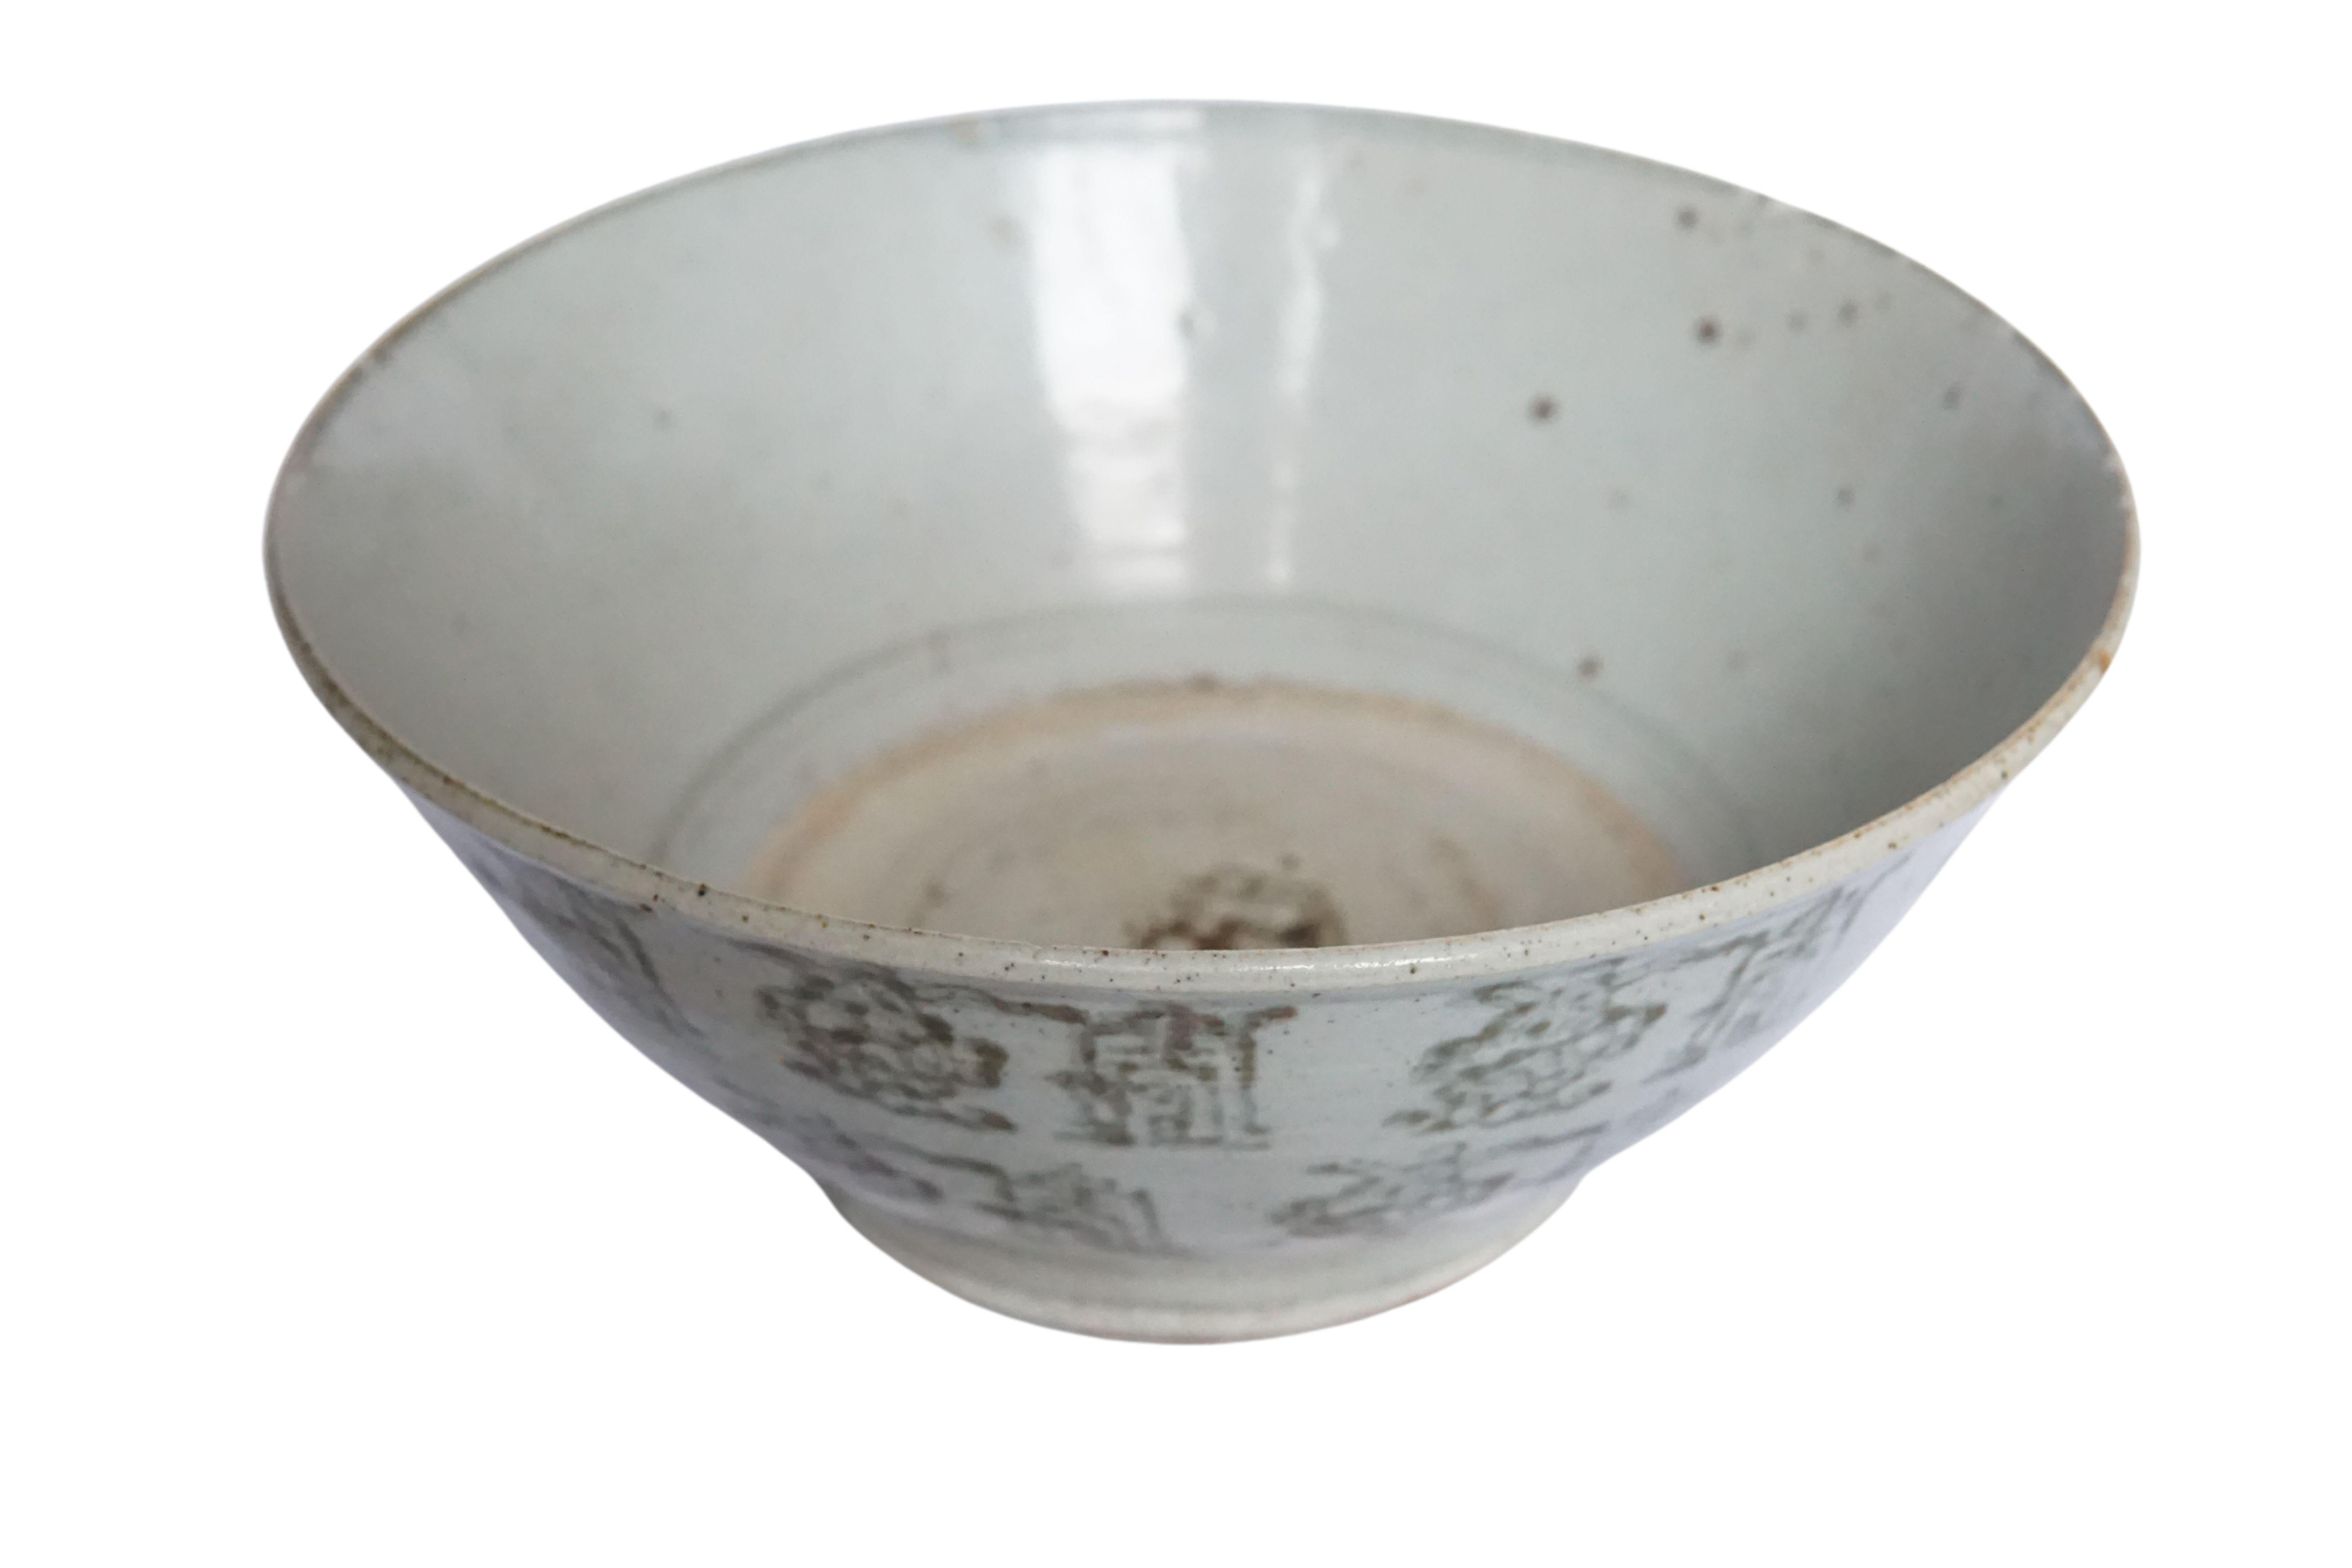 Diese chinesische Keramikschale aus der Qing-Dynastie wird von einer blau-grauen Glasur dominiert und weist wunderschöne handgemalte Symbole auf. Einst als alltägliche Schale verwendet, ist sie heute ein großartiges Beispiel für chinesische Keramik